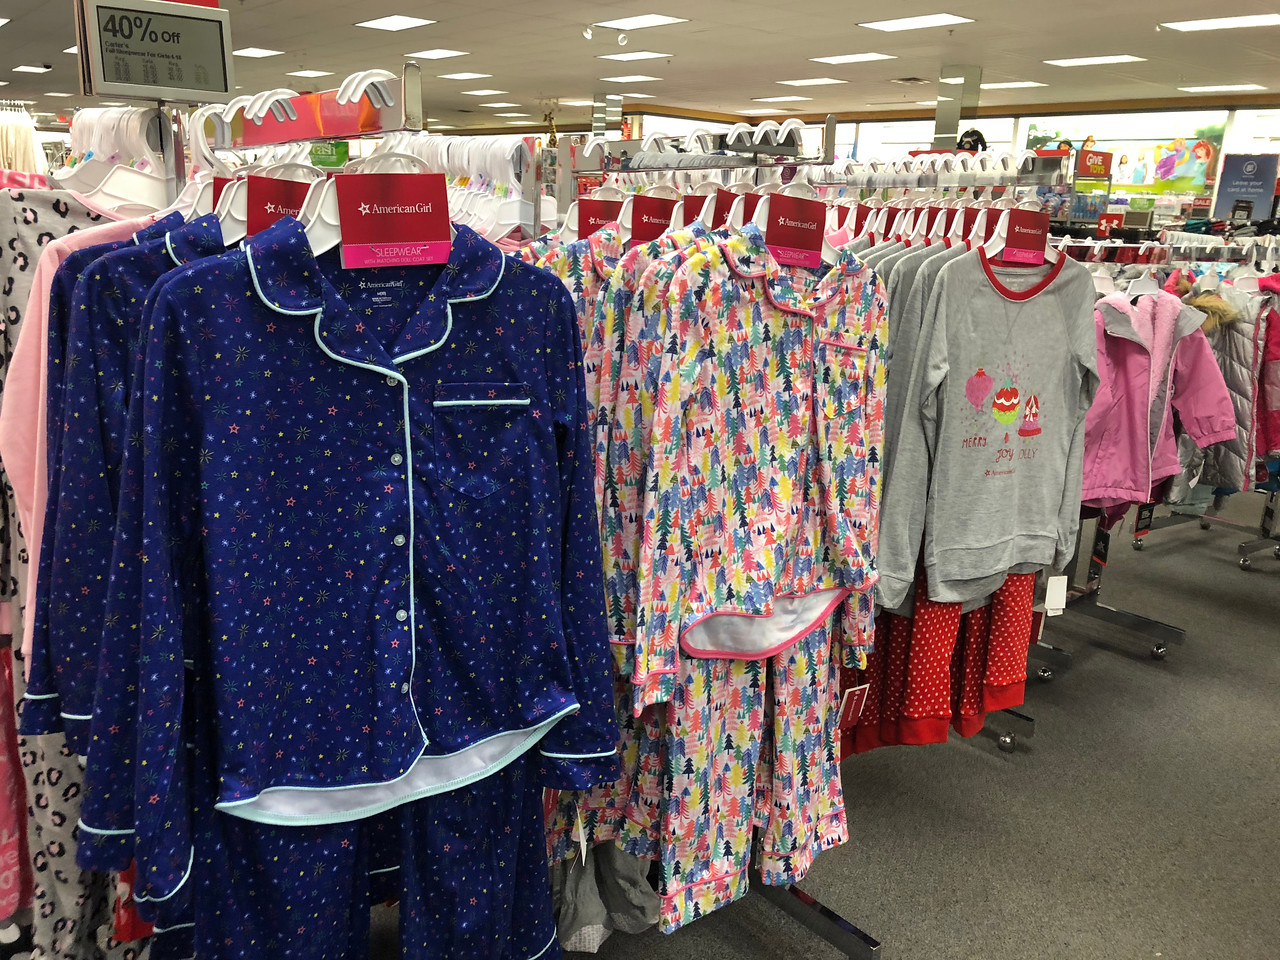 kohls girl and doll pajamas